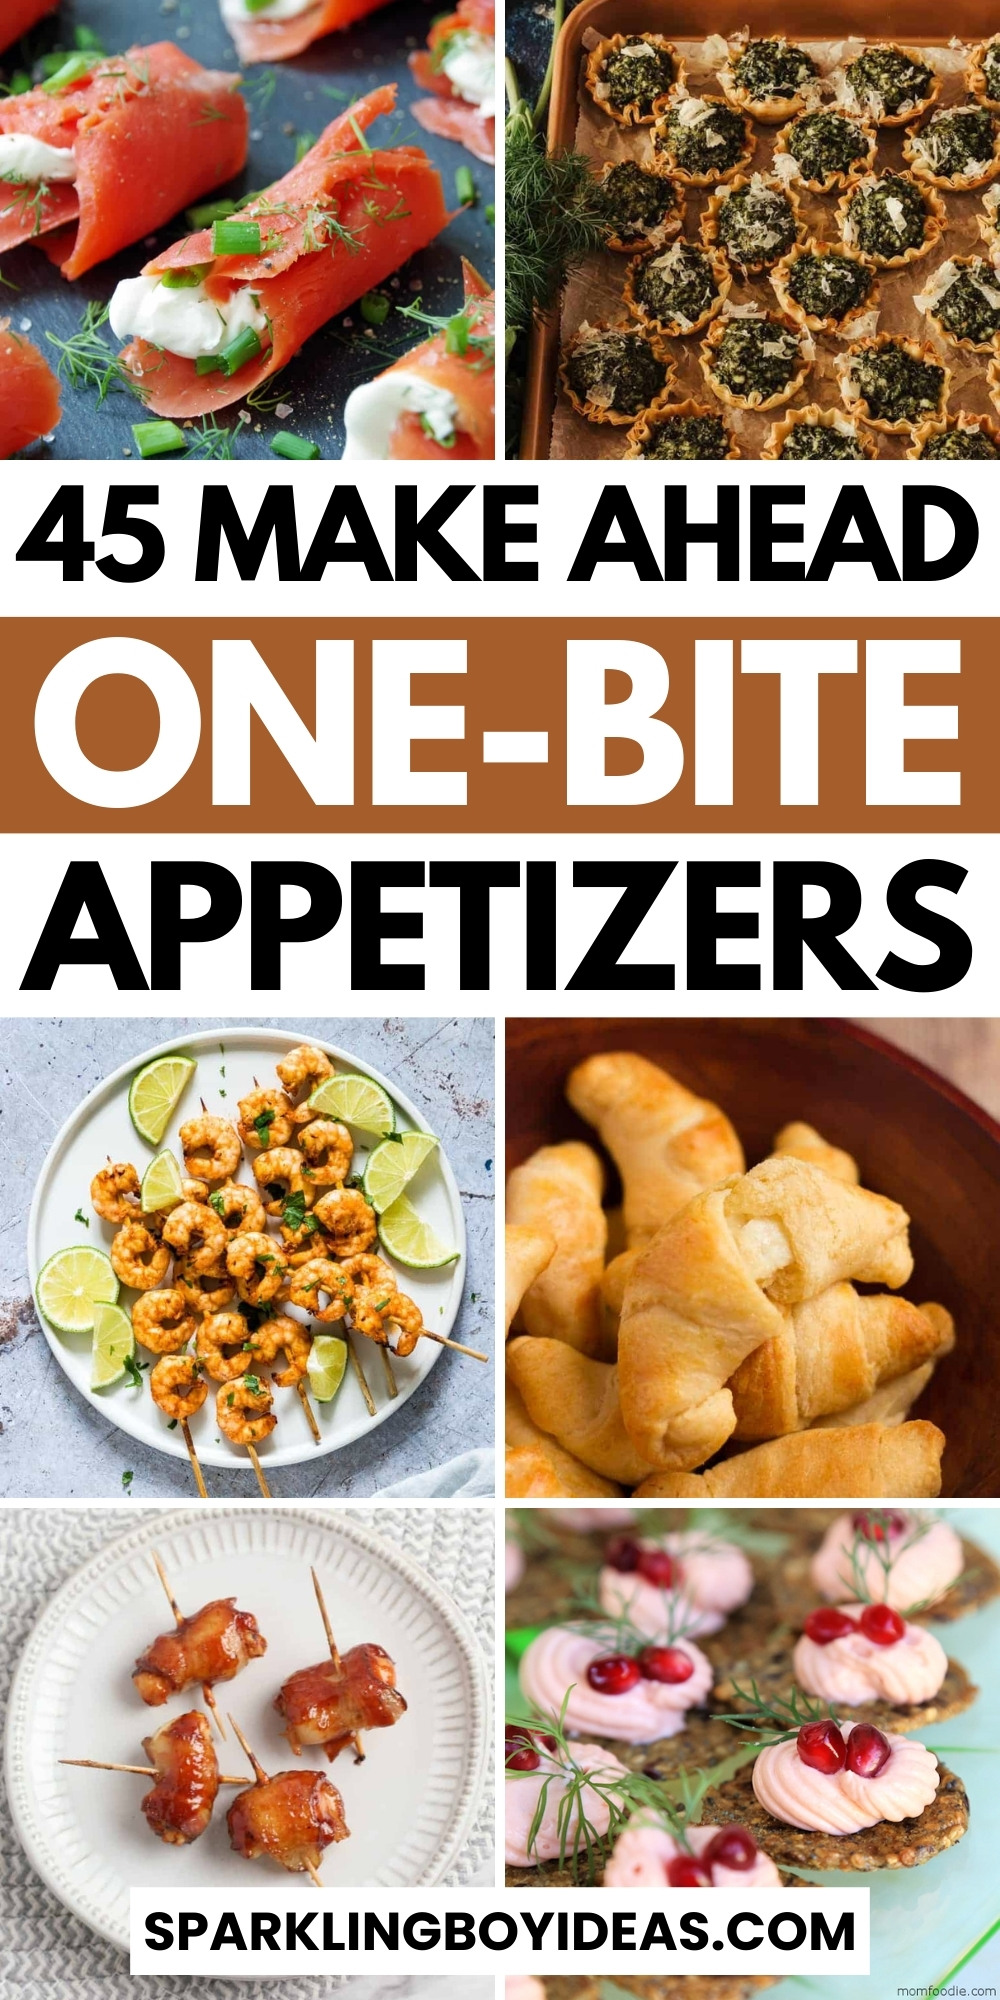 45 Fancy Make Ahead One Bite Appetizers - Sparkling Boy Ideas